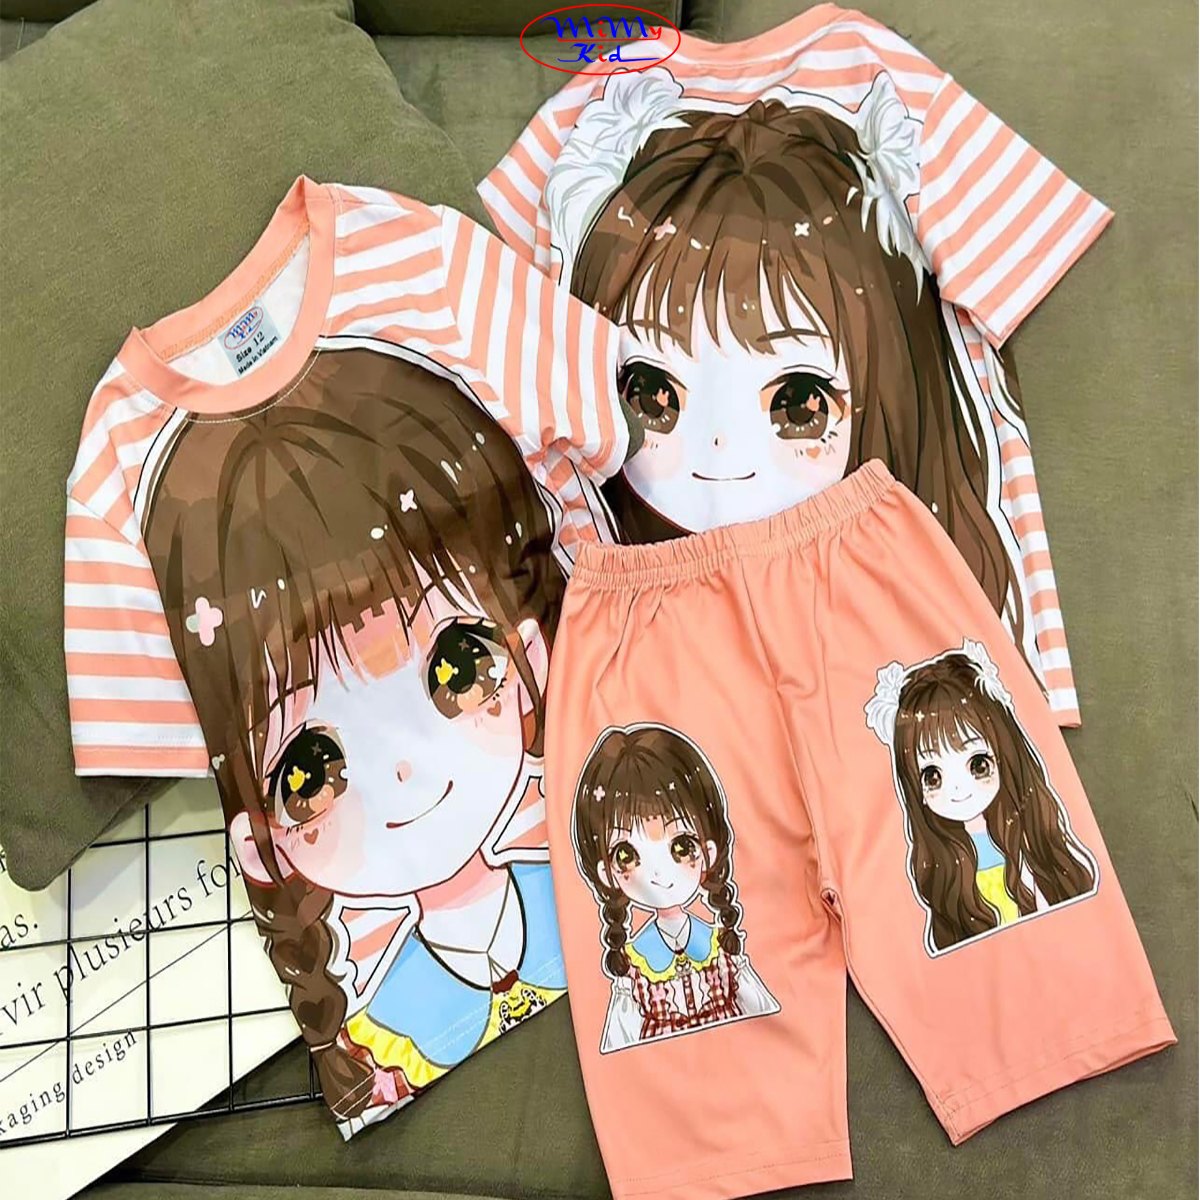 Quần áo bé gái vải thun in hình 3D quần lửng hiệu MIMYKID, đồ bộ cho bé - LMTK-B06GH4